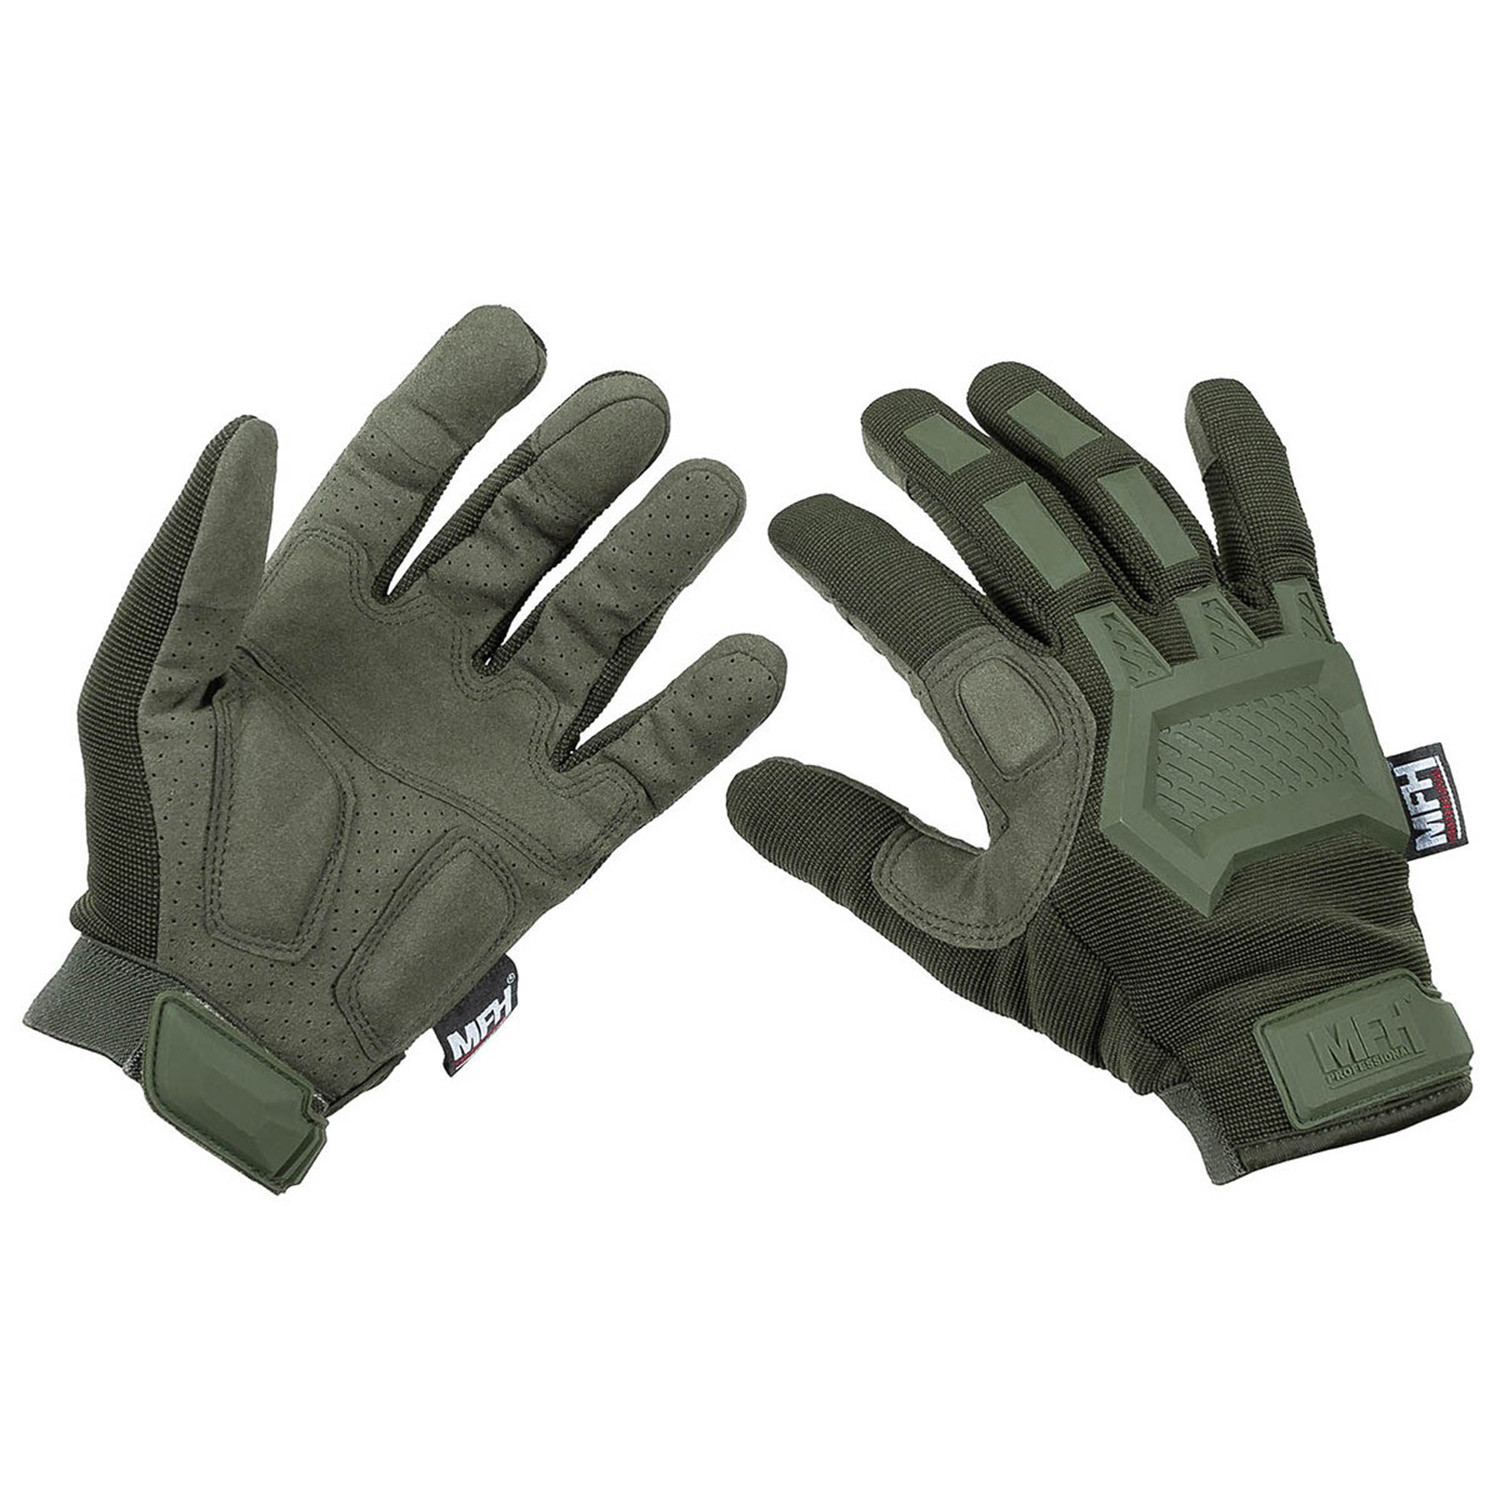 Taktische Handschuhe in Oliv, Größe M (8)